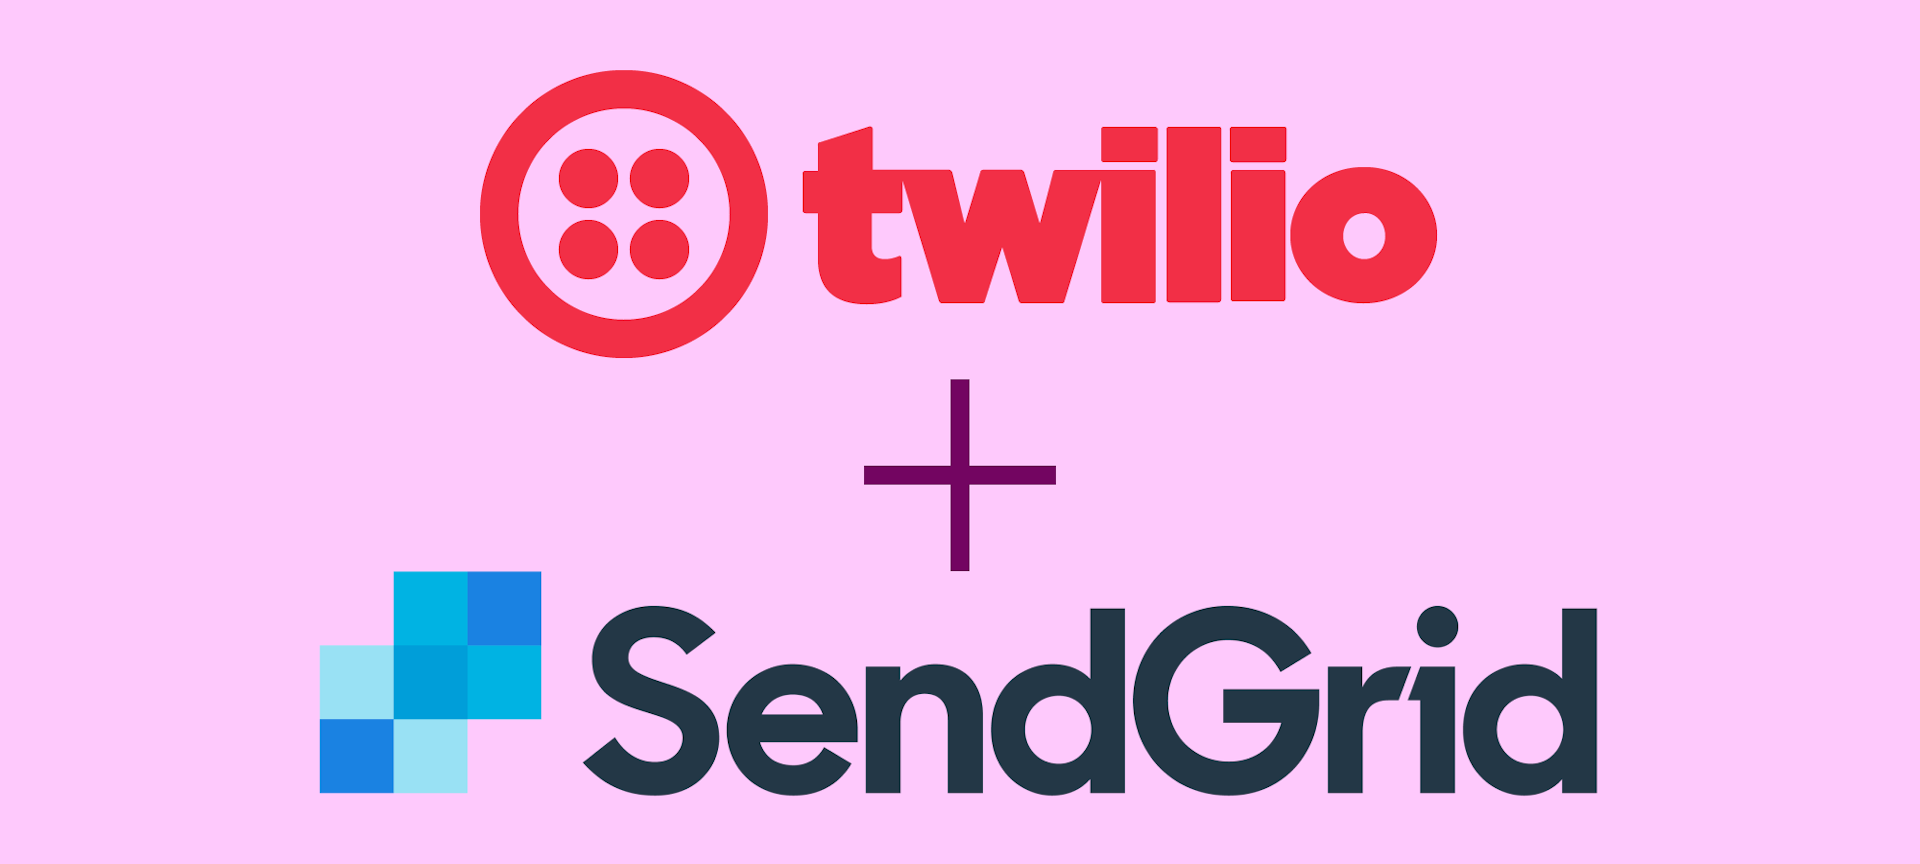 twilio and sendgrid header